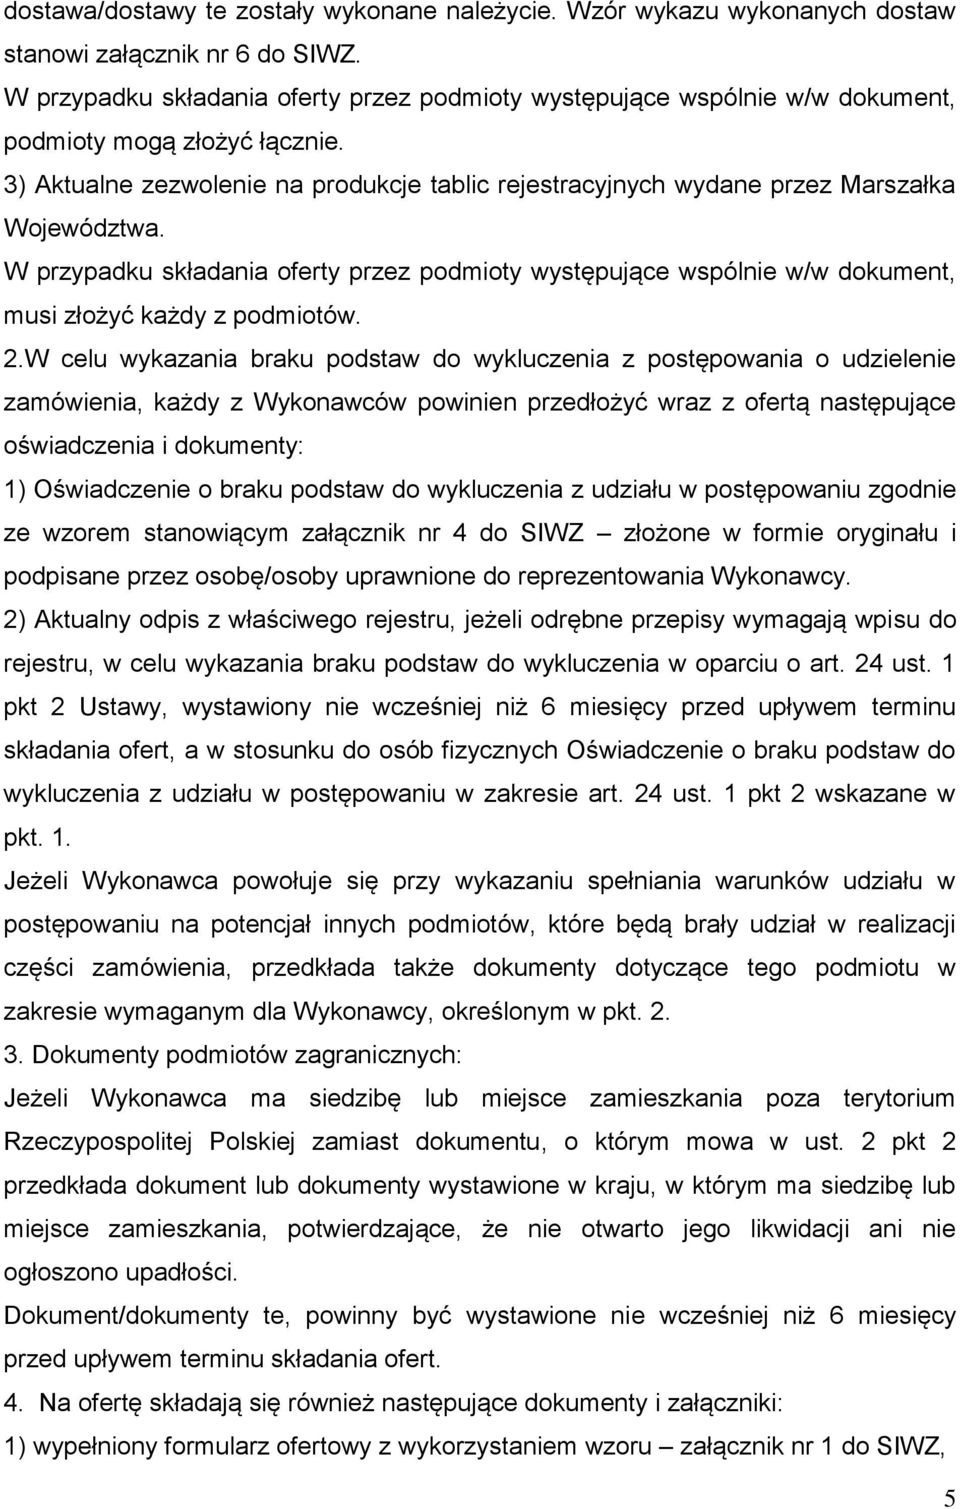 3) Aktualne zezwolenie na produkcje tablic rejestracyjnych wydane przez Marszałka Województwa.